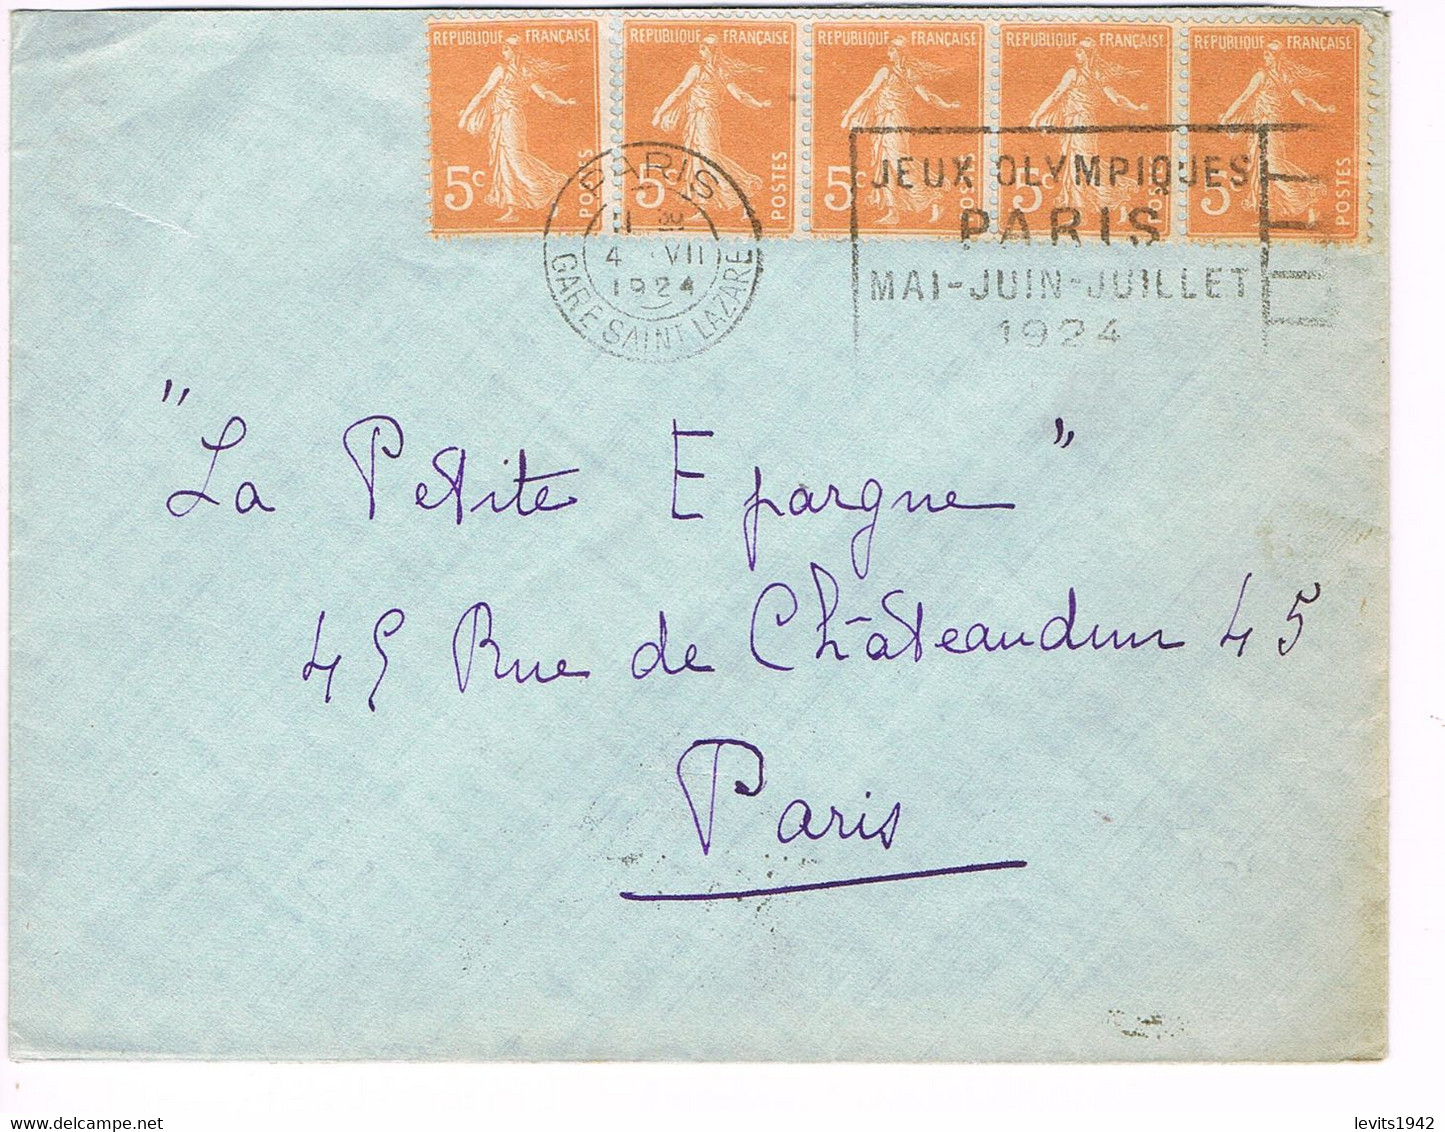 JEUX OLYMPIQUES 1924 -  MARQUE POSTALE - ESCRIME - POLO - JOUR DE COMPETITION - 04-07 - - Ete 1924: Paris